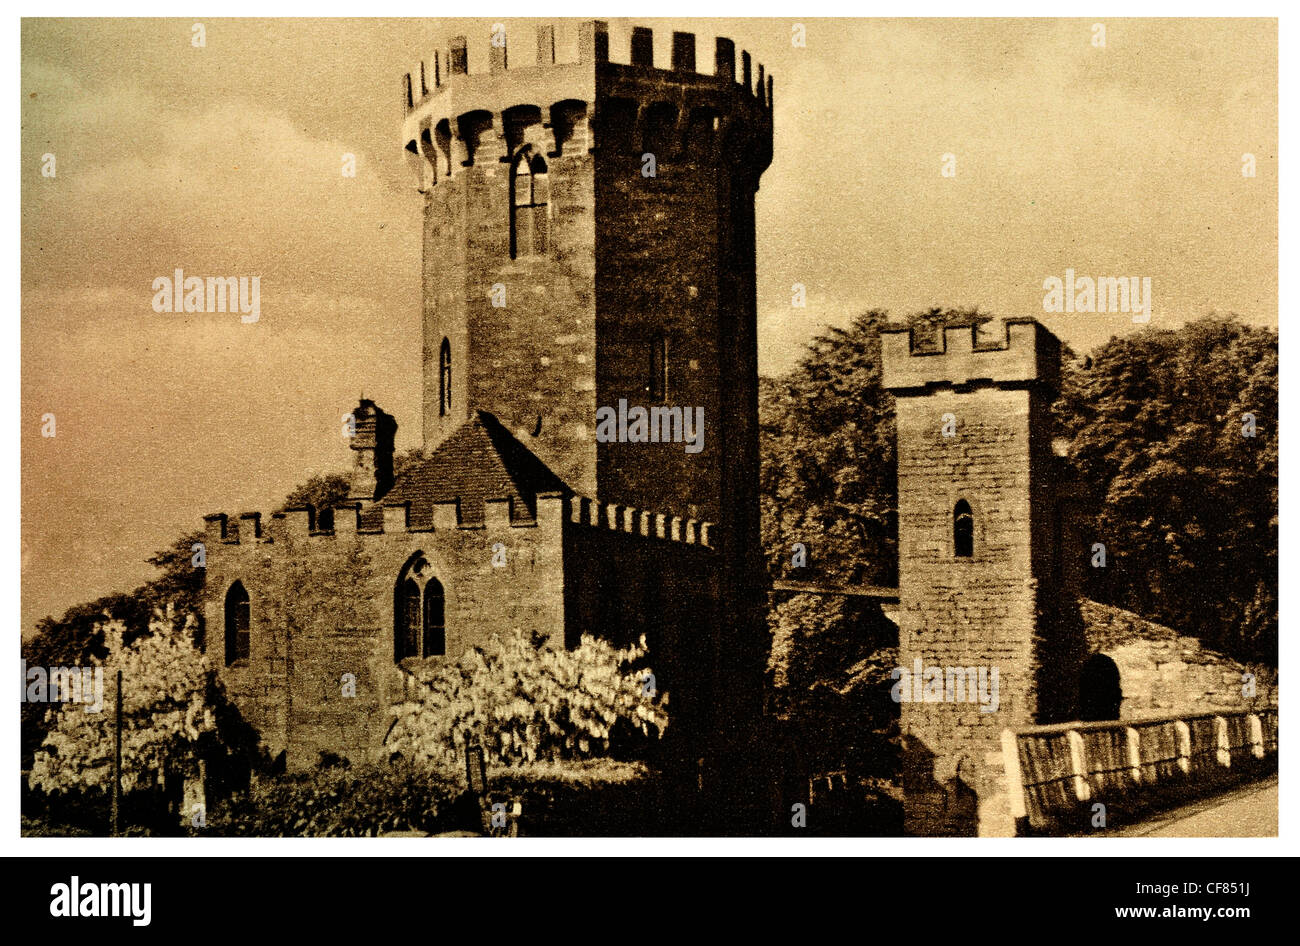 Edgehill Runde Turm Burg Festung 1930 Warwick Warwickshire West Midlands England Europa UK Erholung Tourismus Sehenswürdigkeit Stockfoto